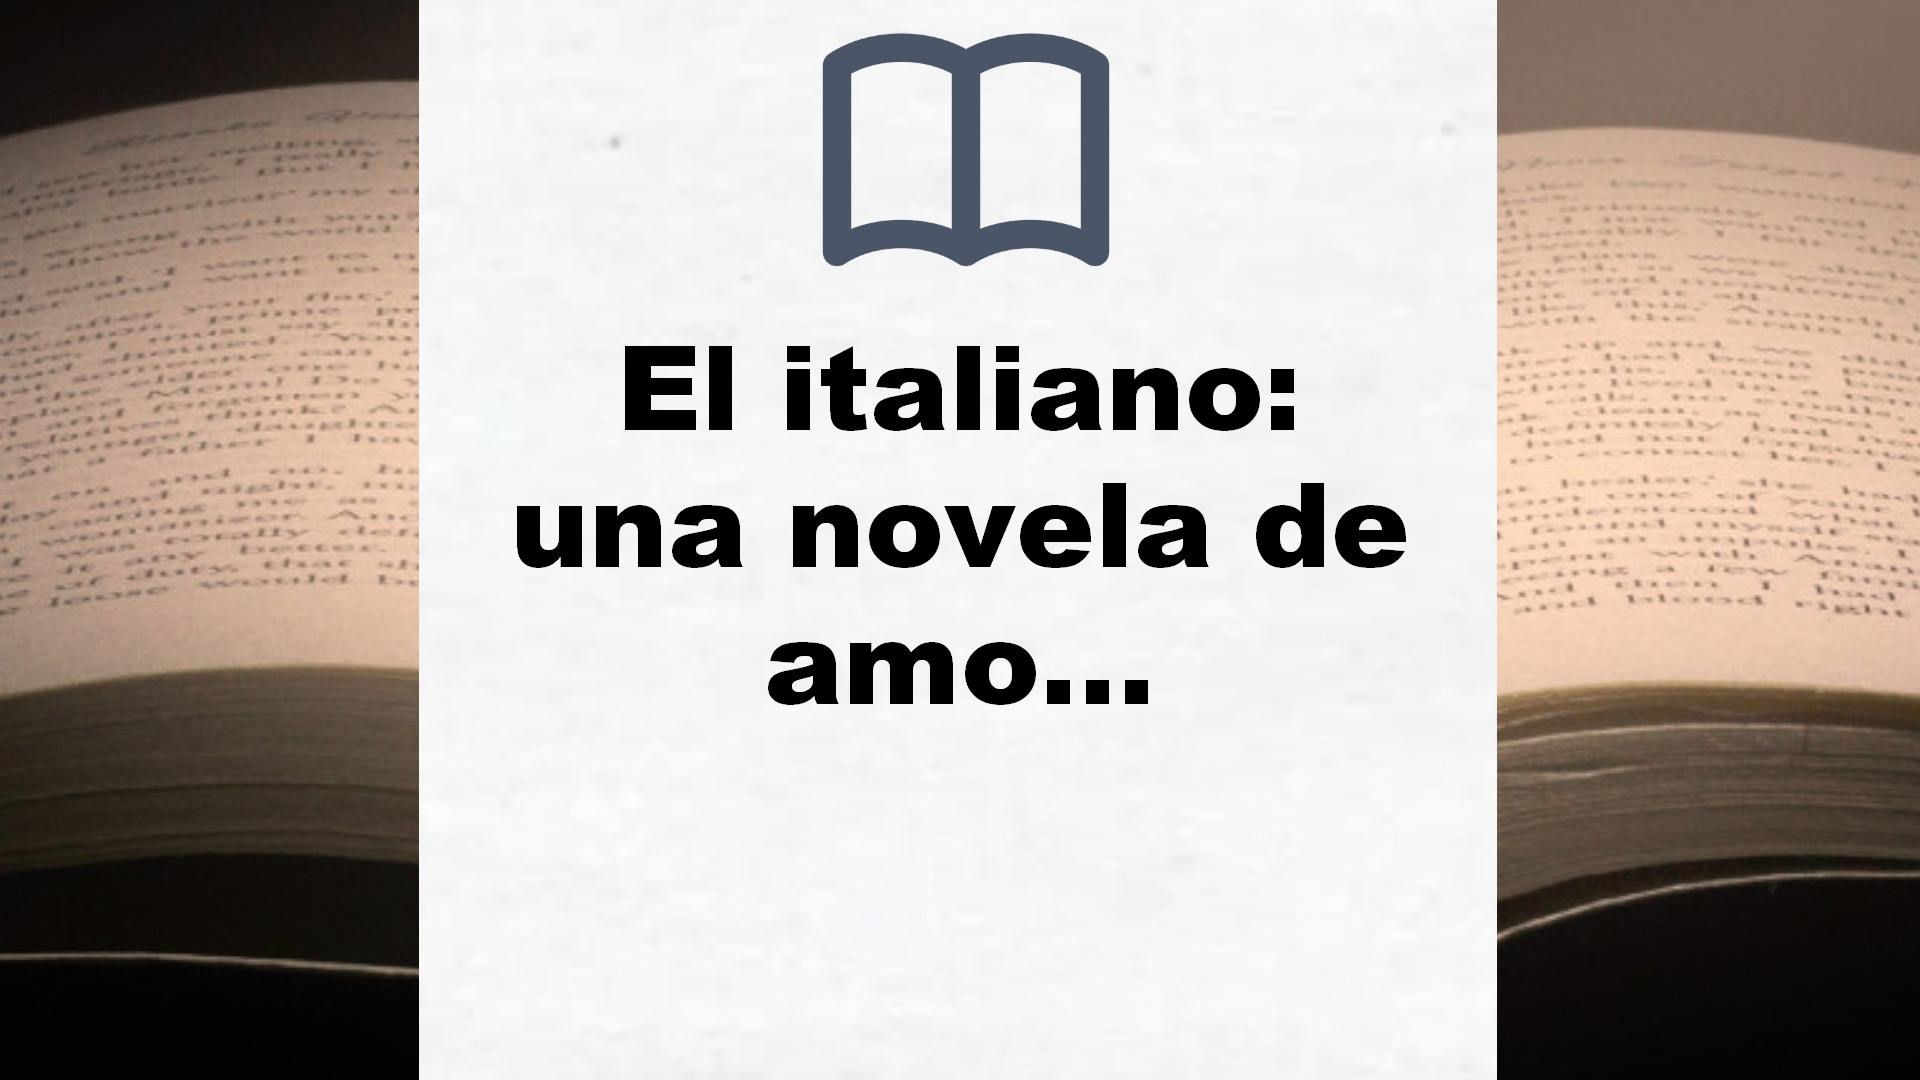 El italiano: una novela de amor, mar y guerra (Hispánica) – Reseña del libro